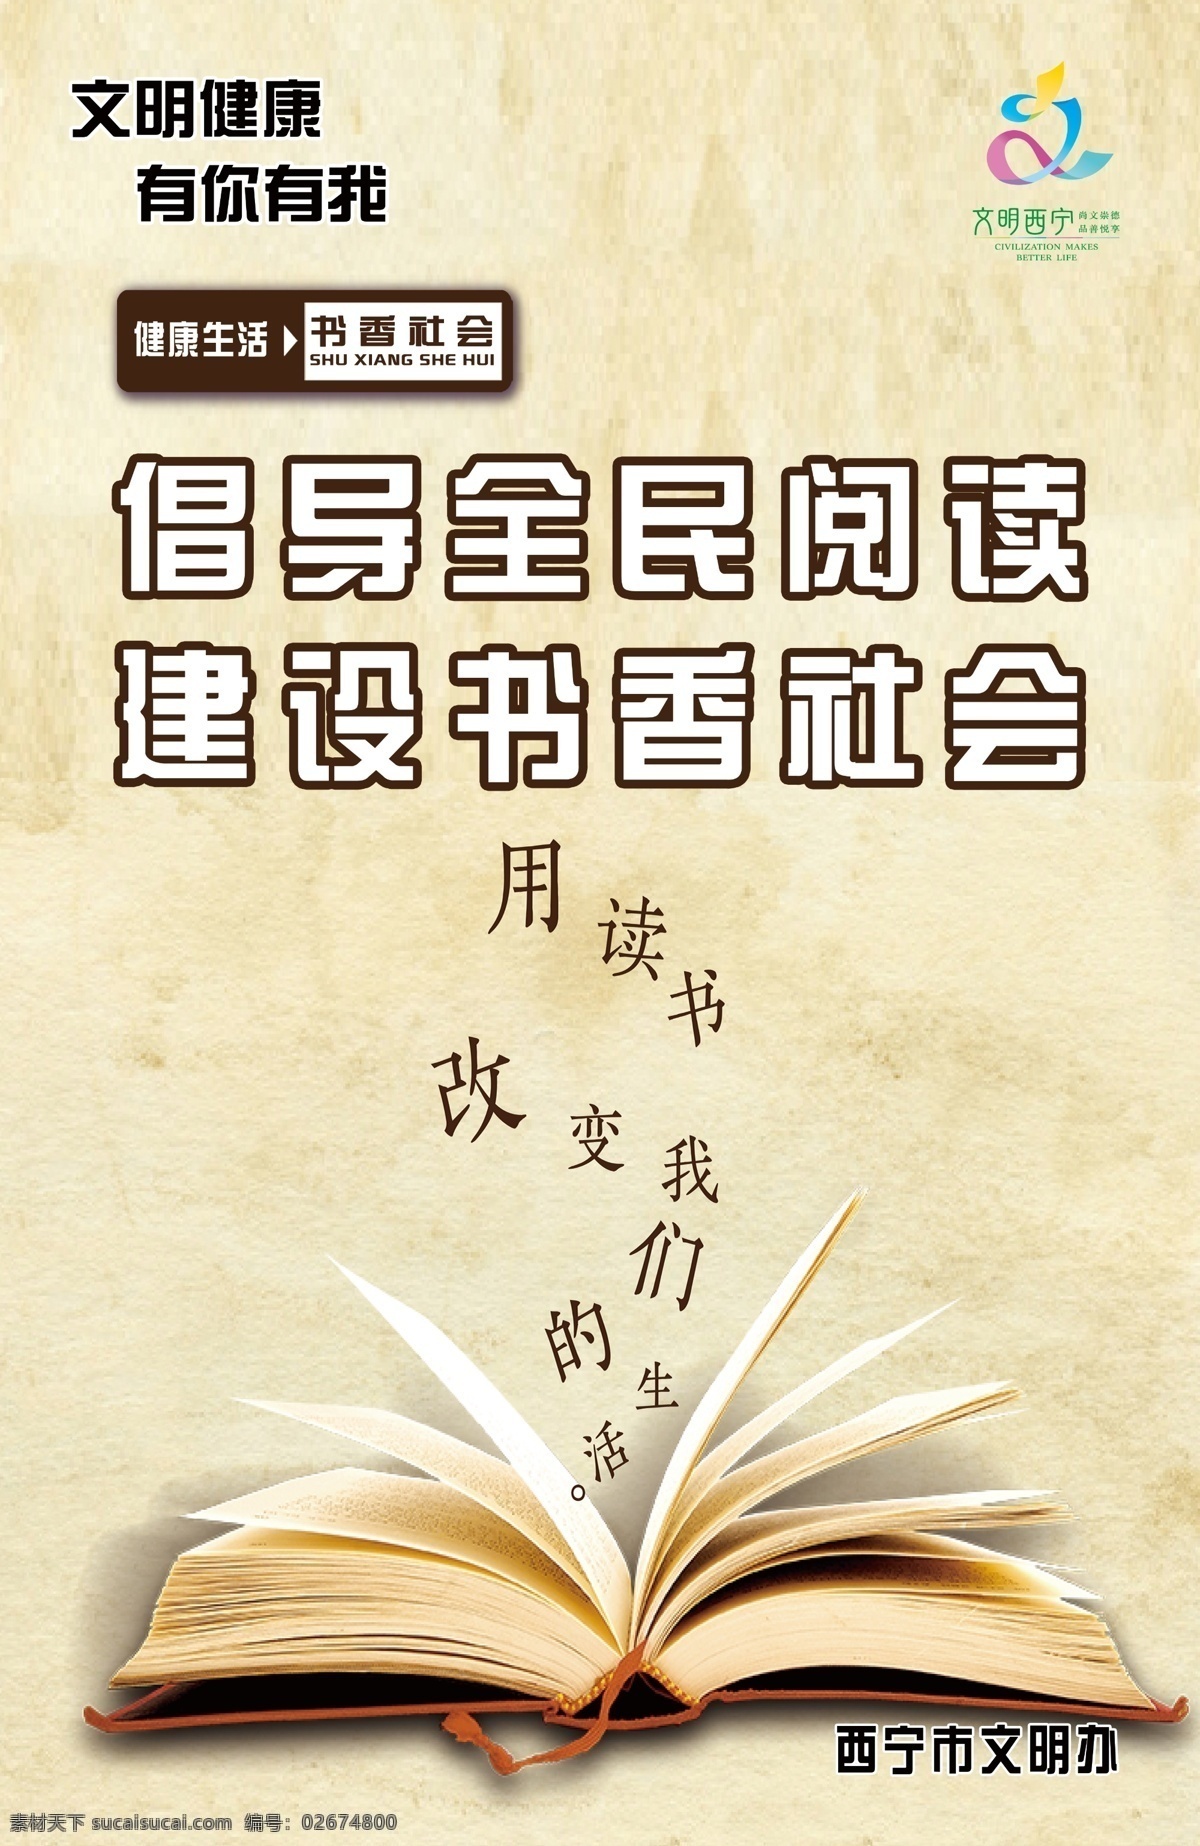 全民阅读 书香社会 文明西宁 读书 阅读